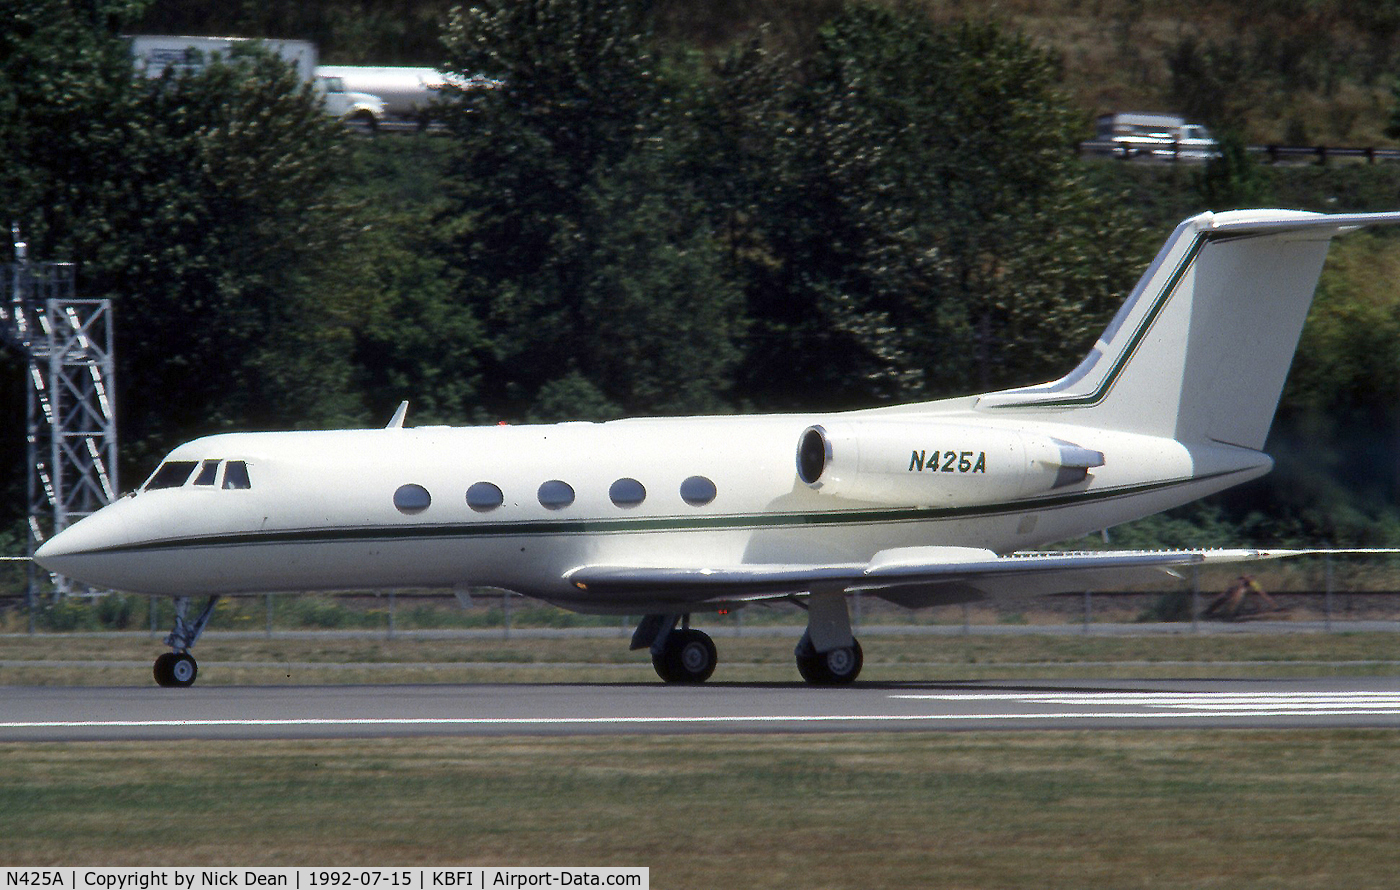 N425A, 1968 Grumman G-1159 Gulfstream II C/N 039, KBFI